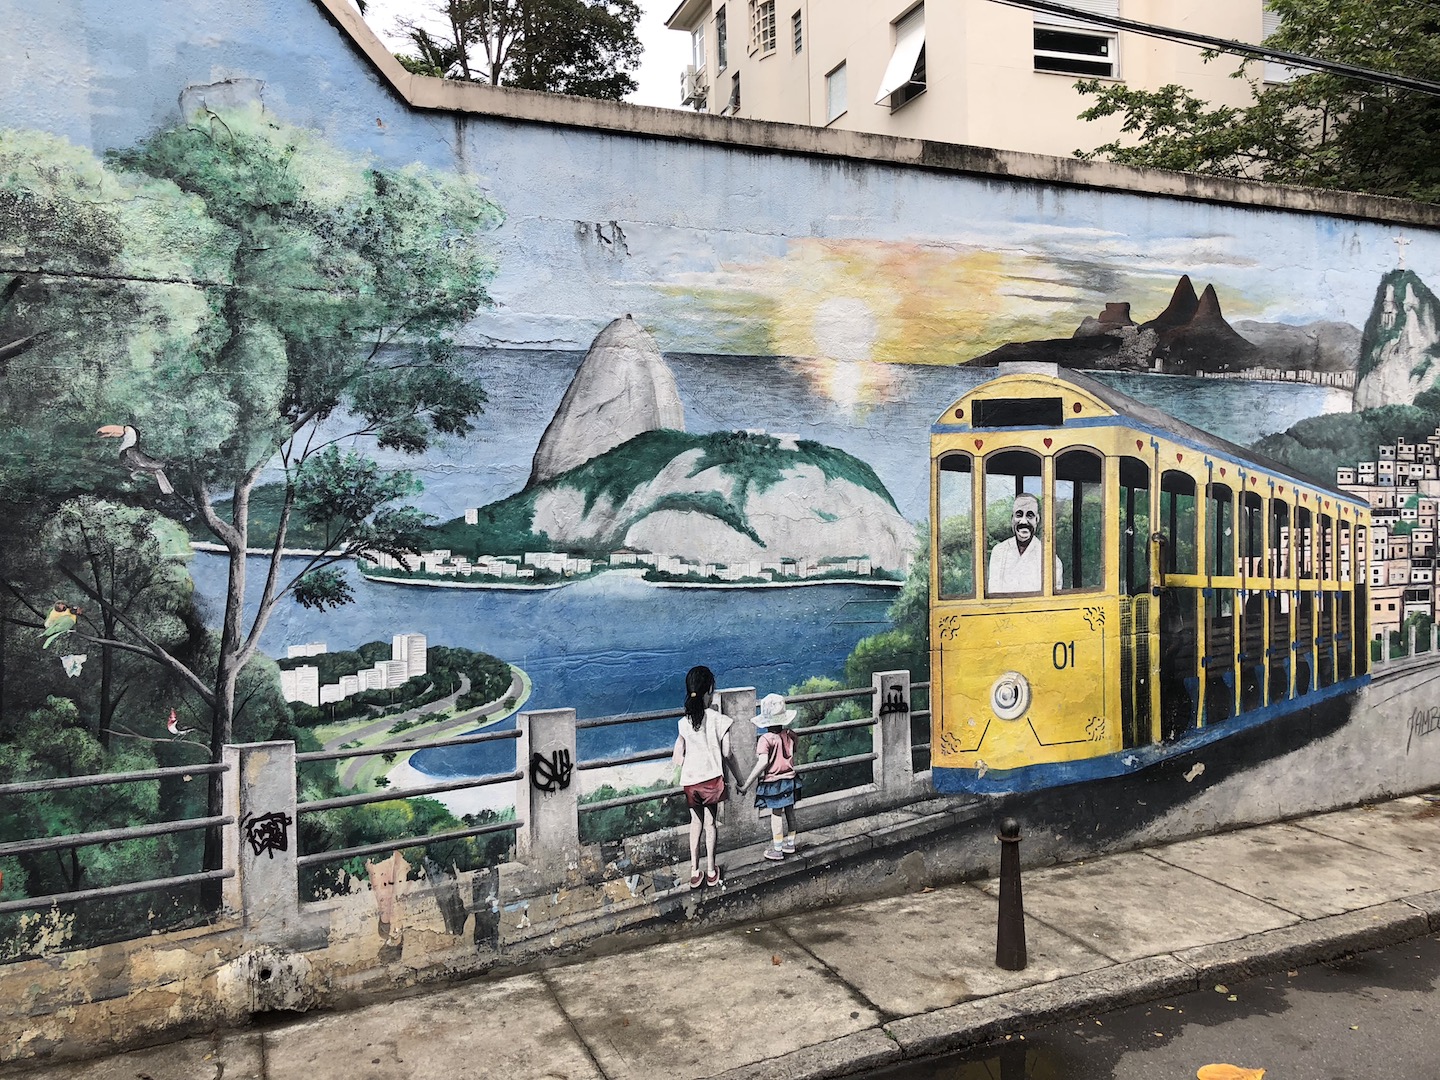 Santa Teresa, Rio de Janeiro